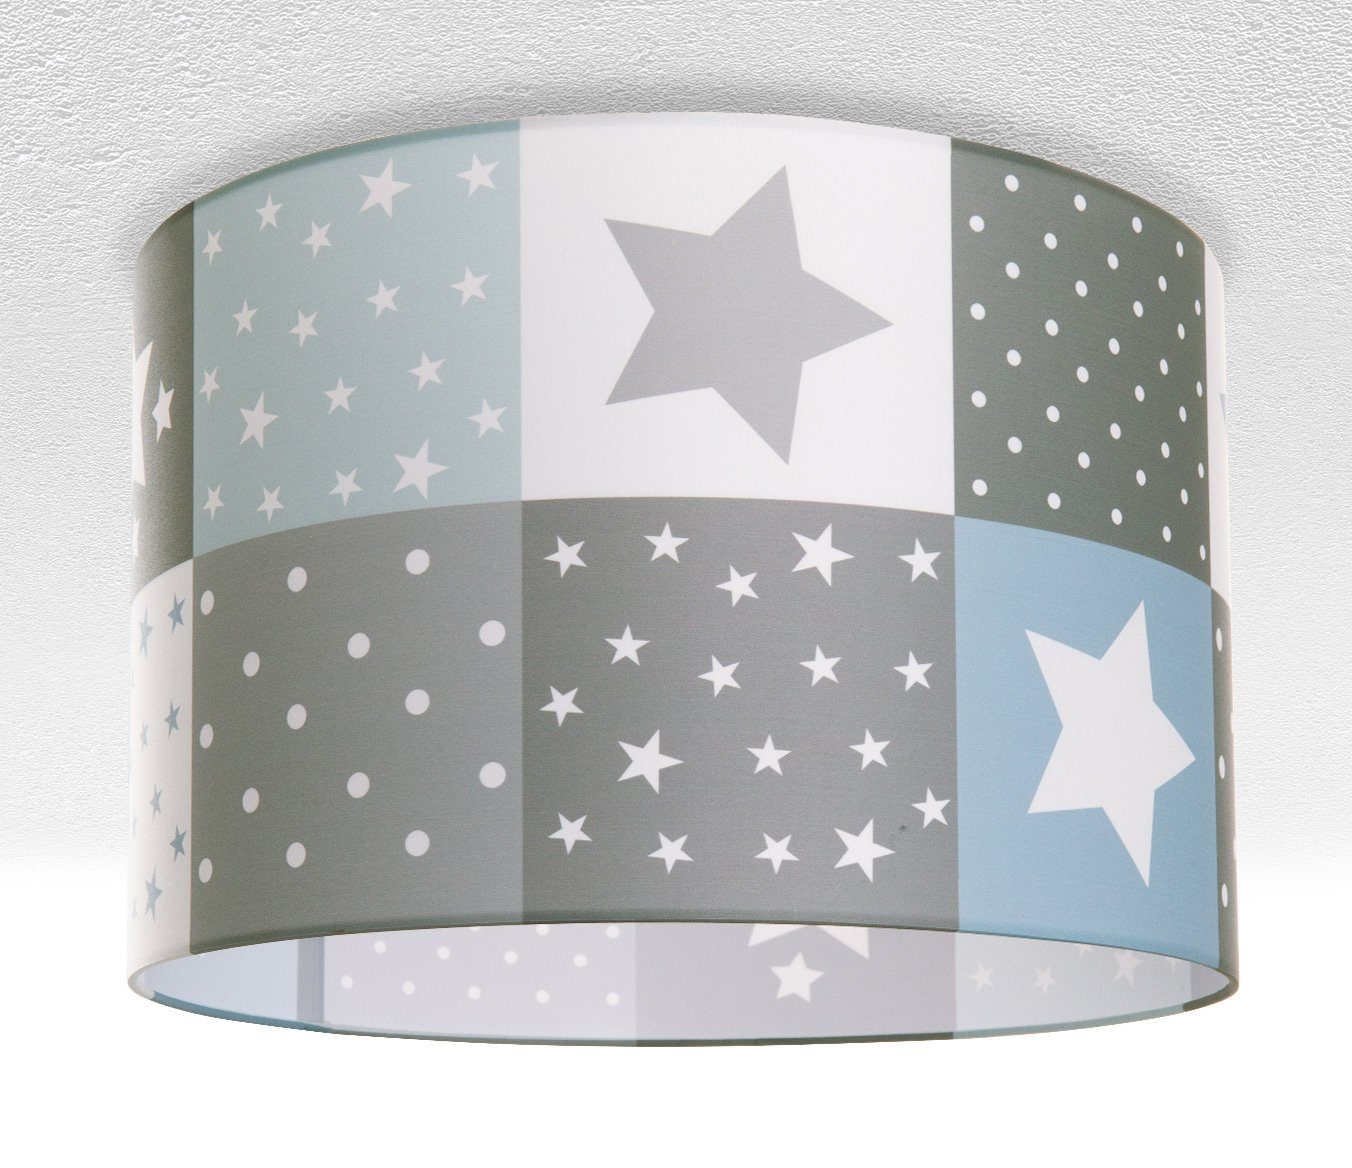 Deckenleuchte Cosmo Deckenlampe Home Paco ohne Sternen LED Leuchtmittel, Kinderzimmer Kinderlampe Lampe 345, E27 Motiv